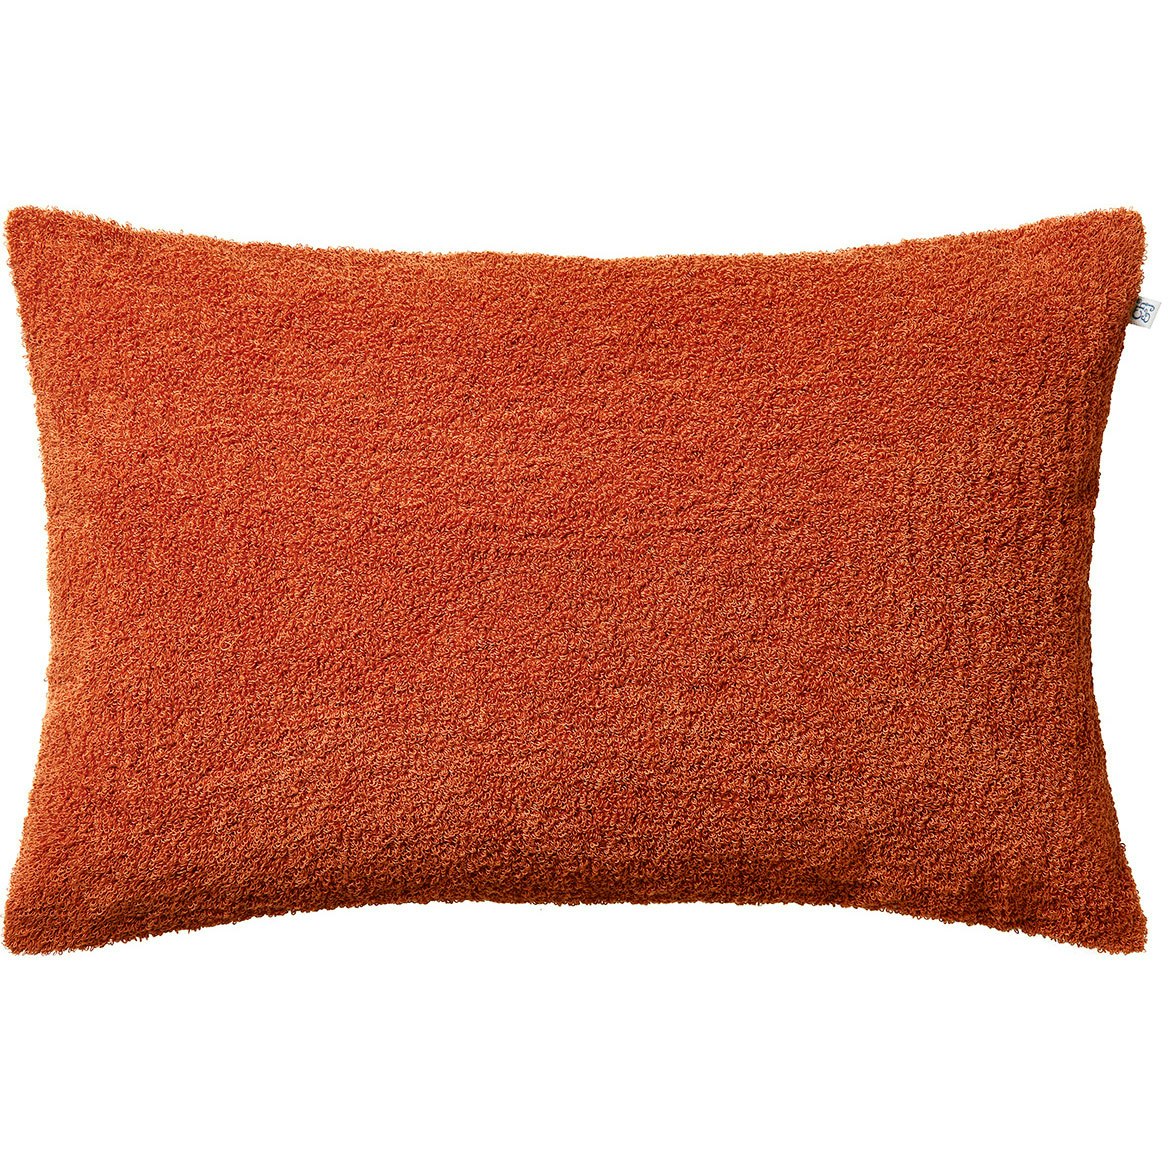 Mani Cushion Cover Bouclé 40x60 cm, Apricot Orange